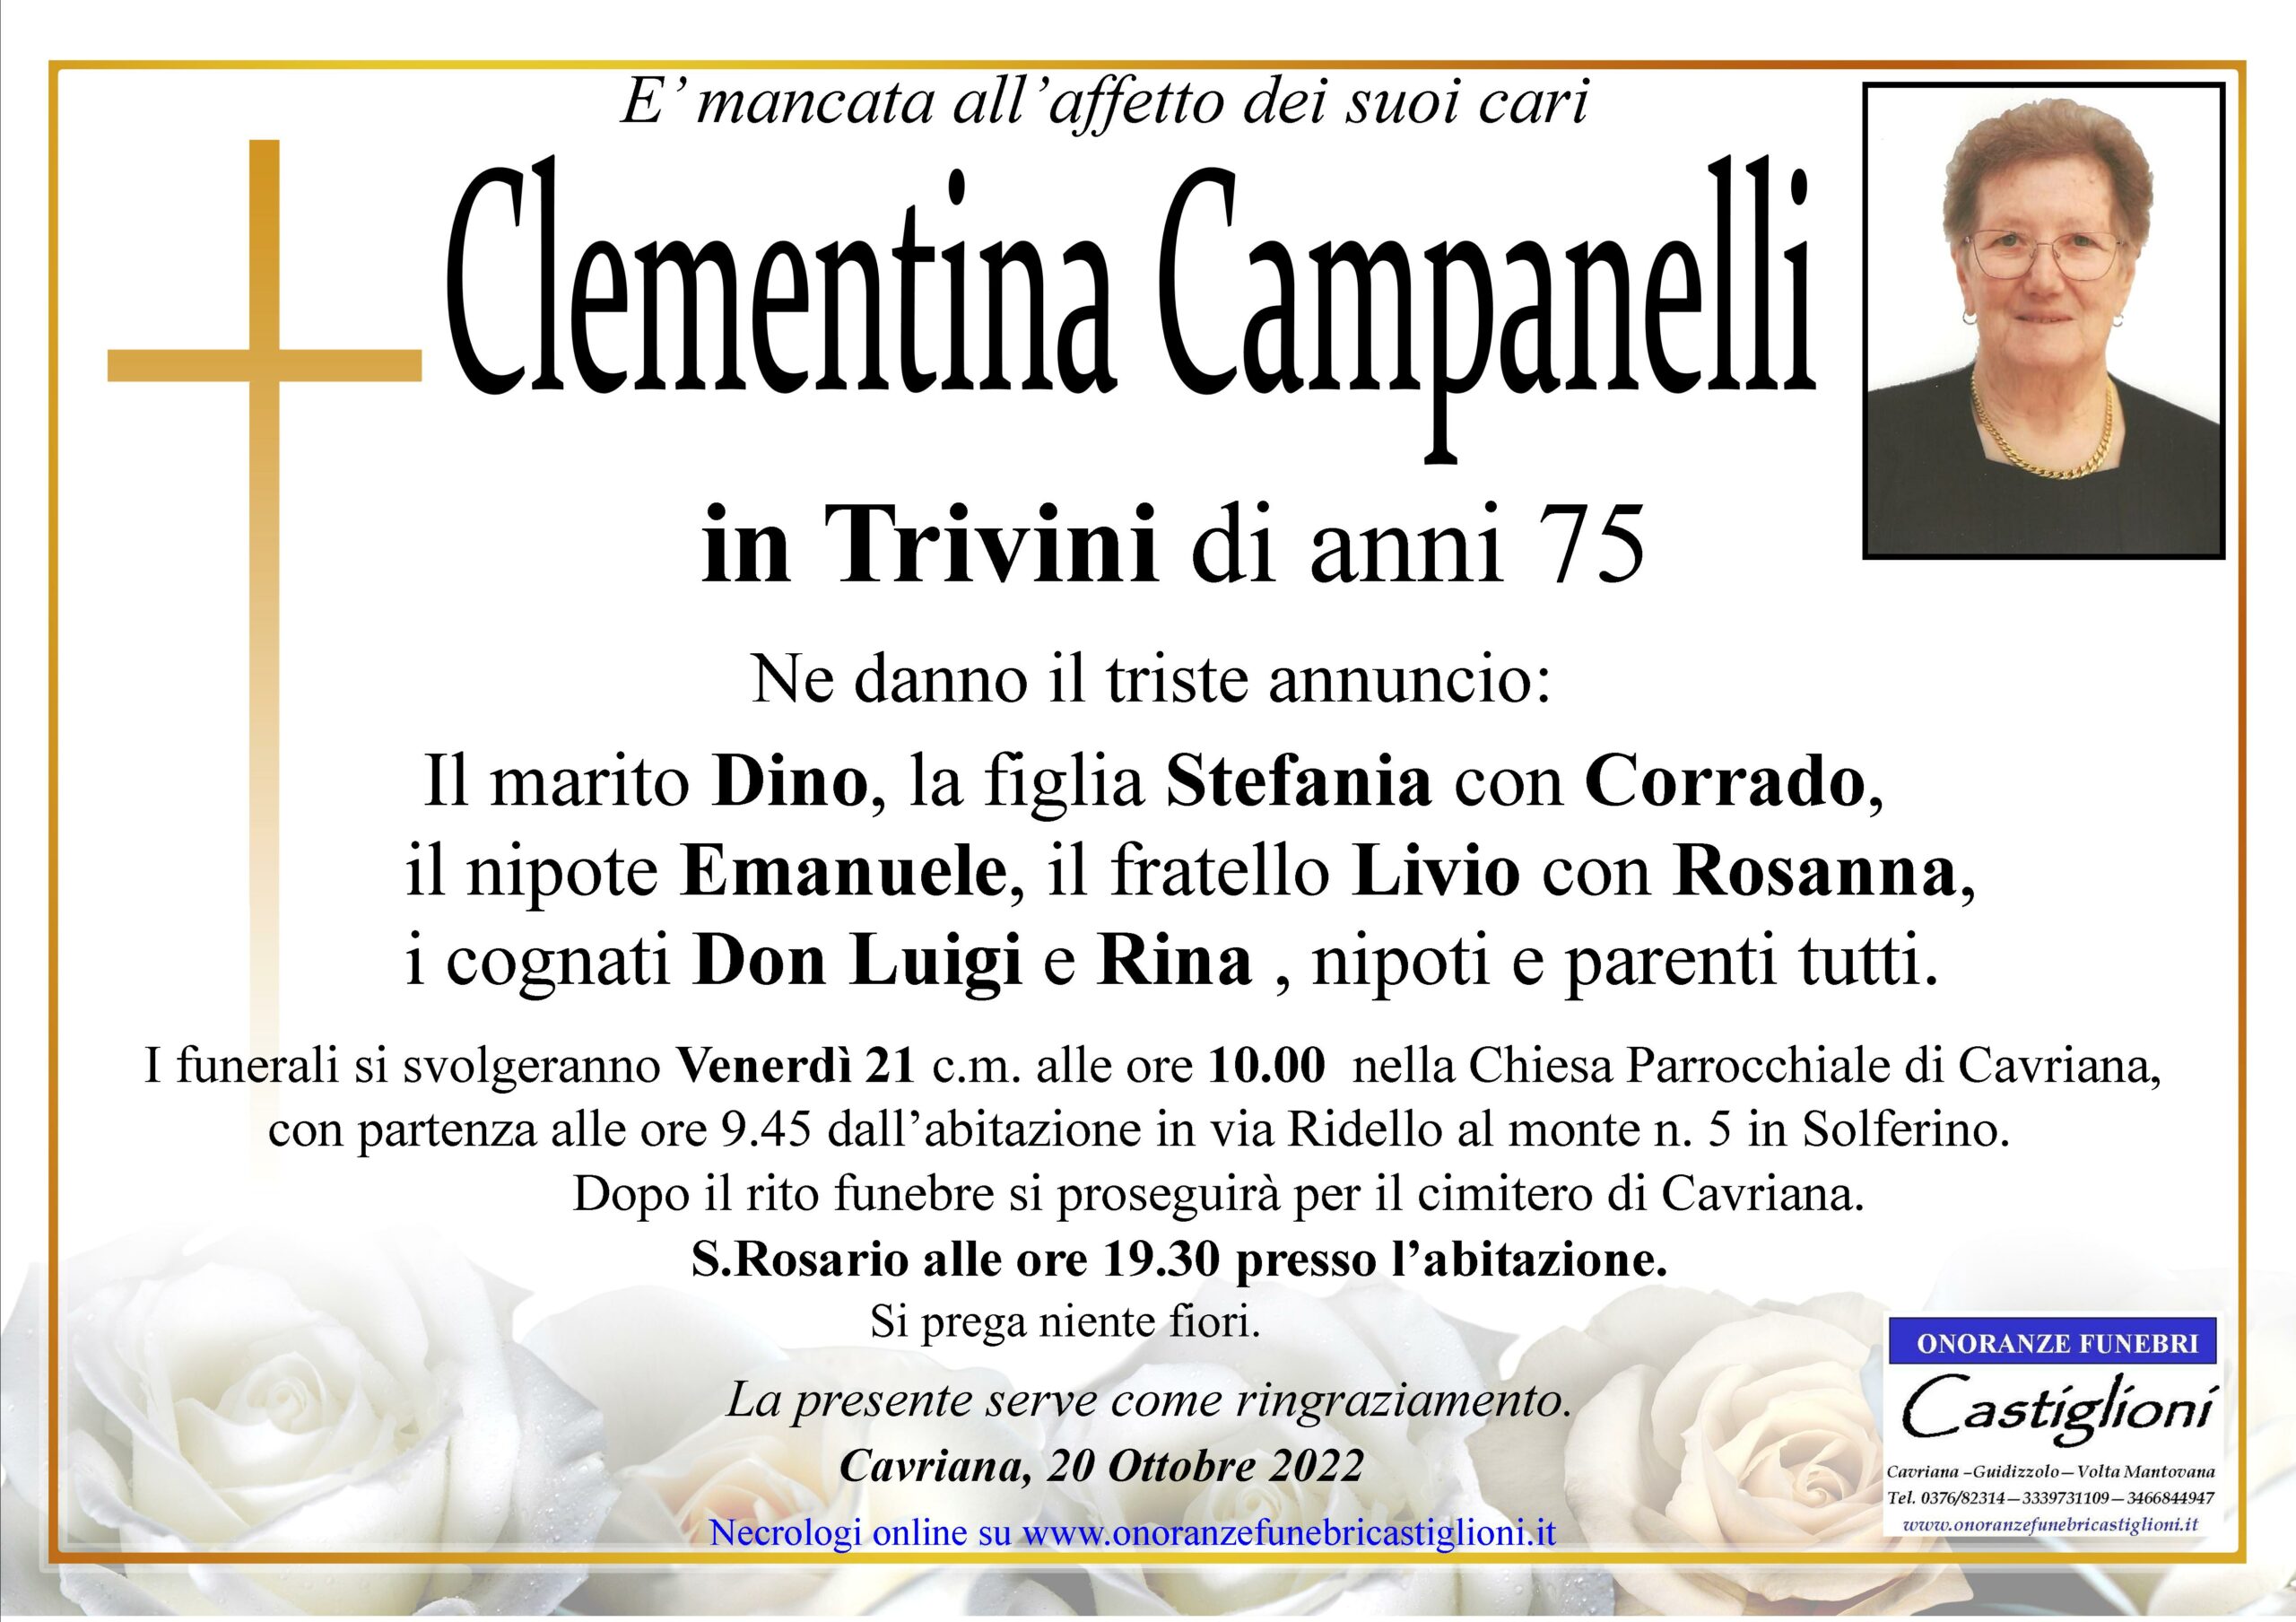 Al momento stai visualizzando Clementina Campanelli